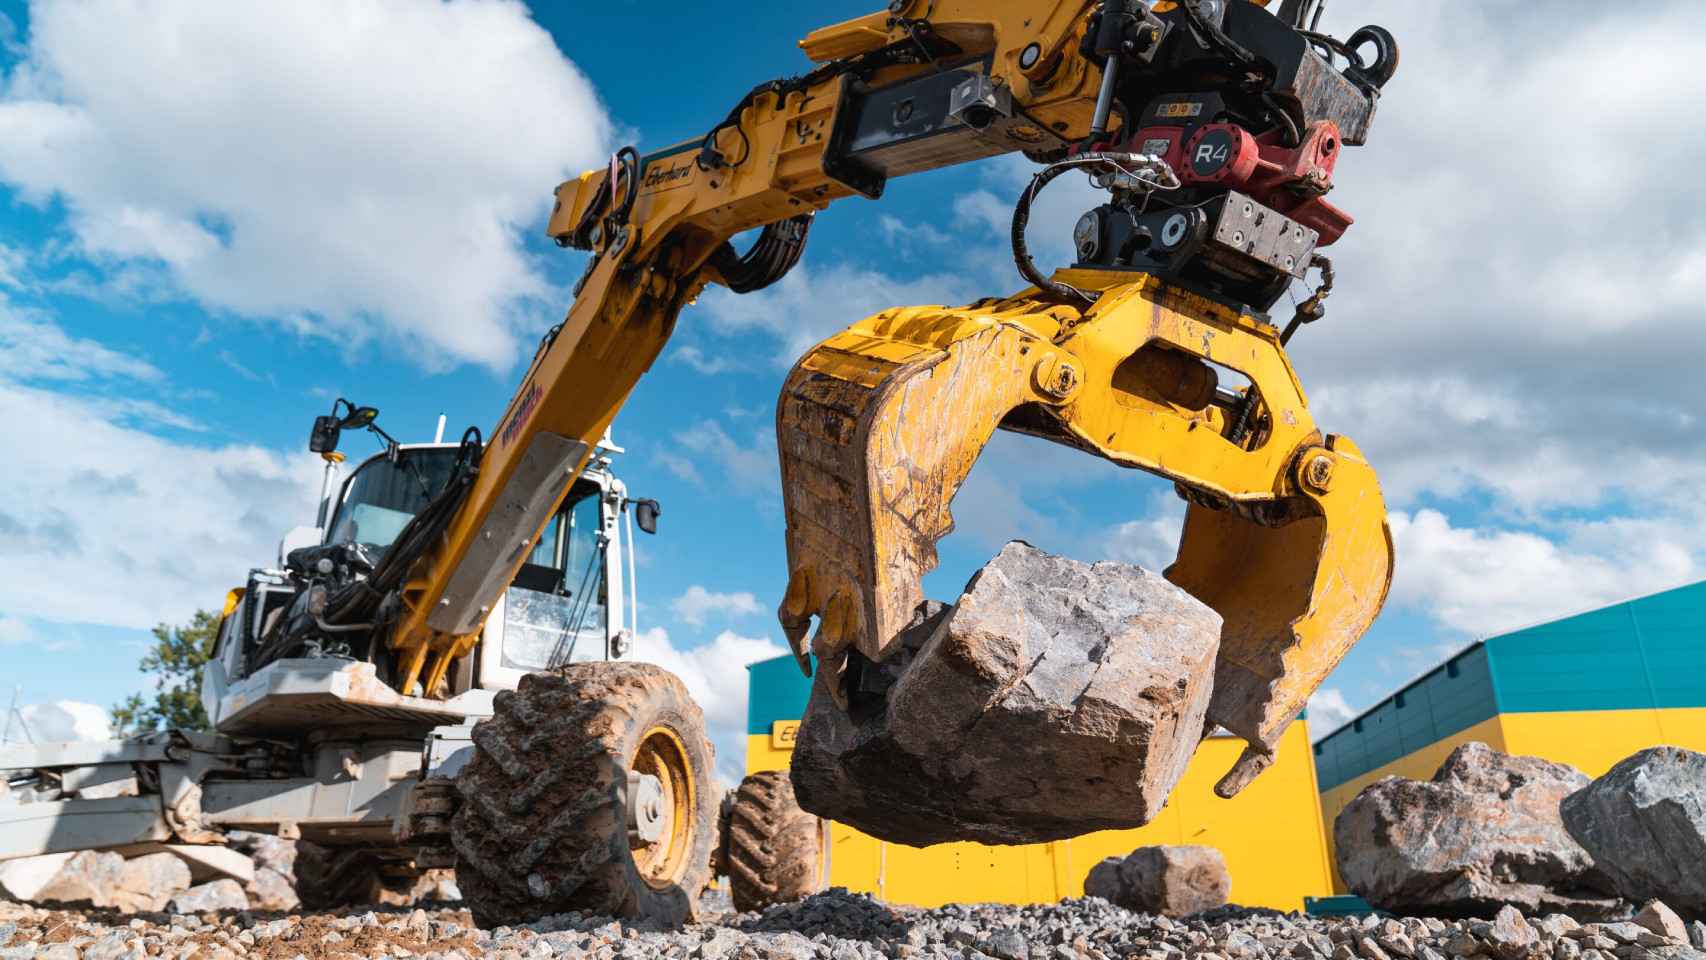 La excavadora HEAP es capaz de levantar de forma autónoma grandes piedras y escombros